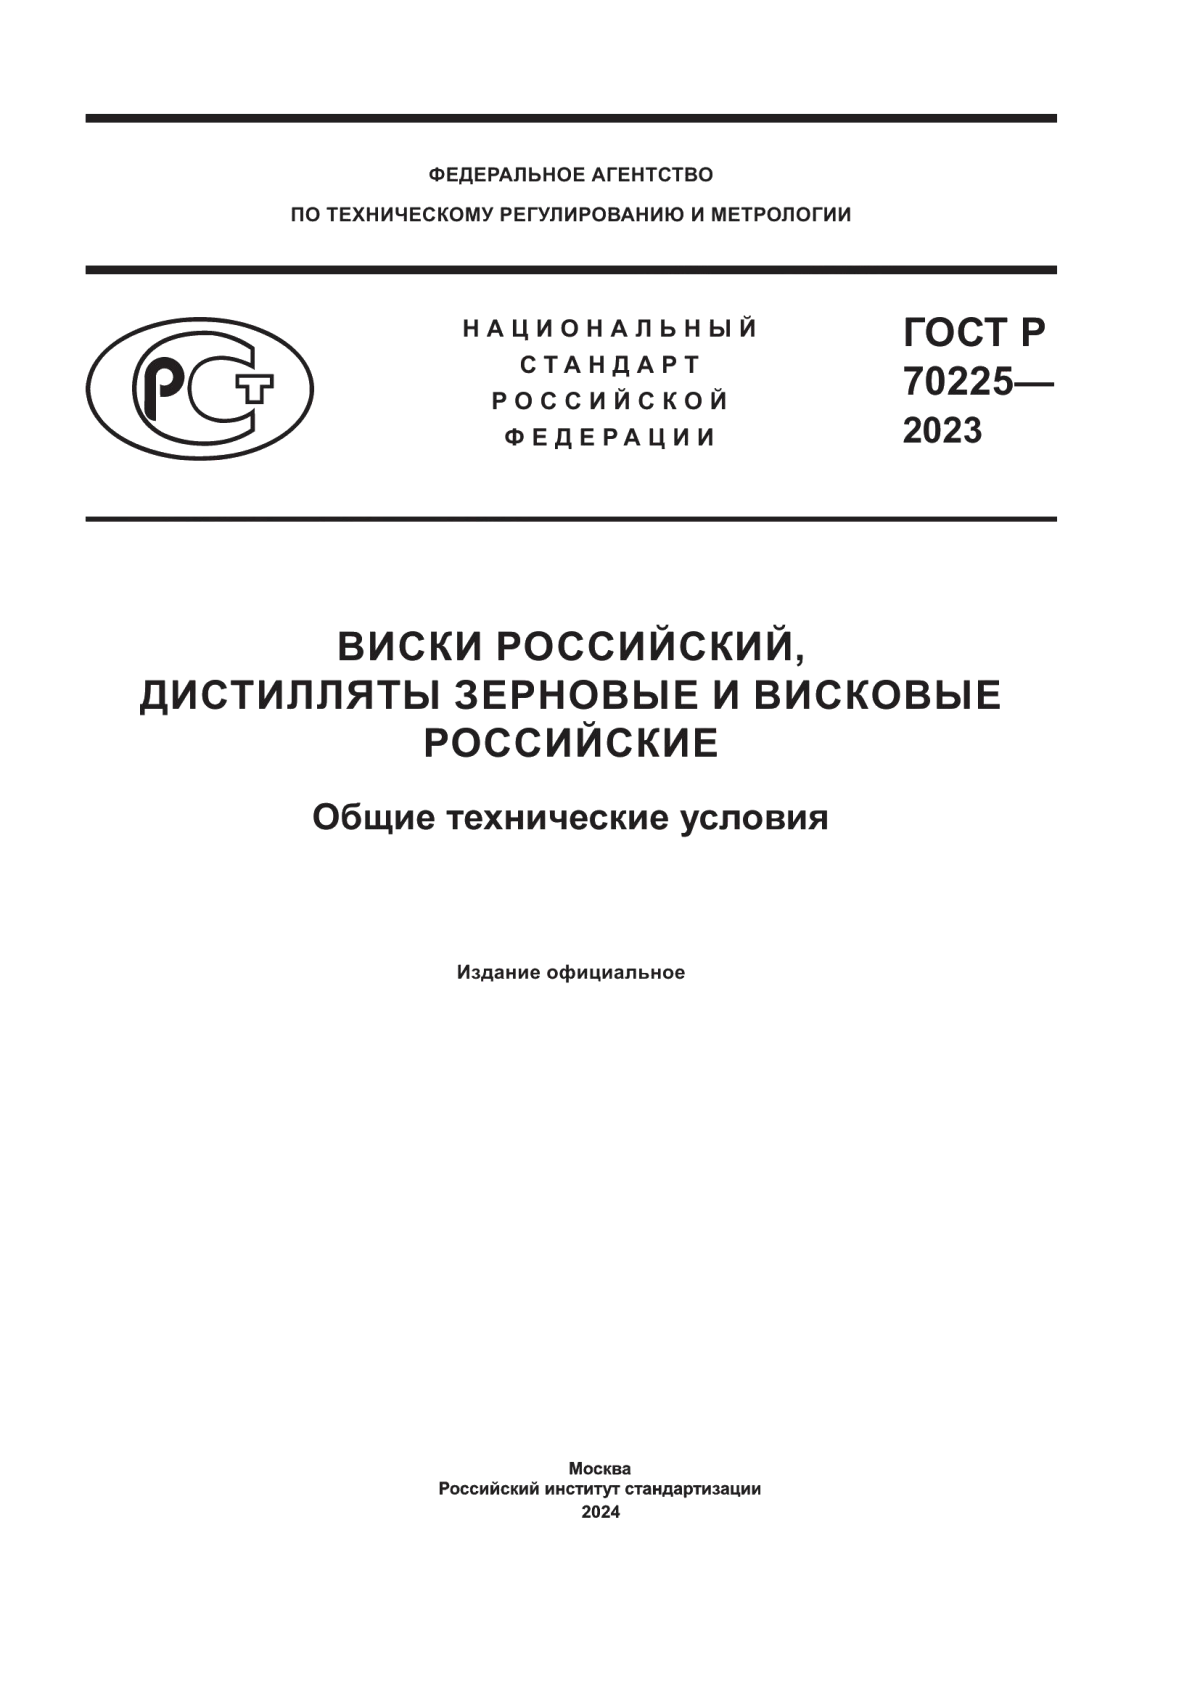 ГОСТ Р 70225-2023 Виски российский, дистилляты зерновые и висковые российские. Общие технические условия